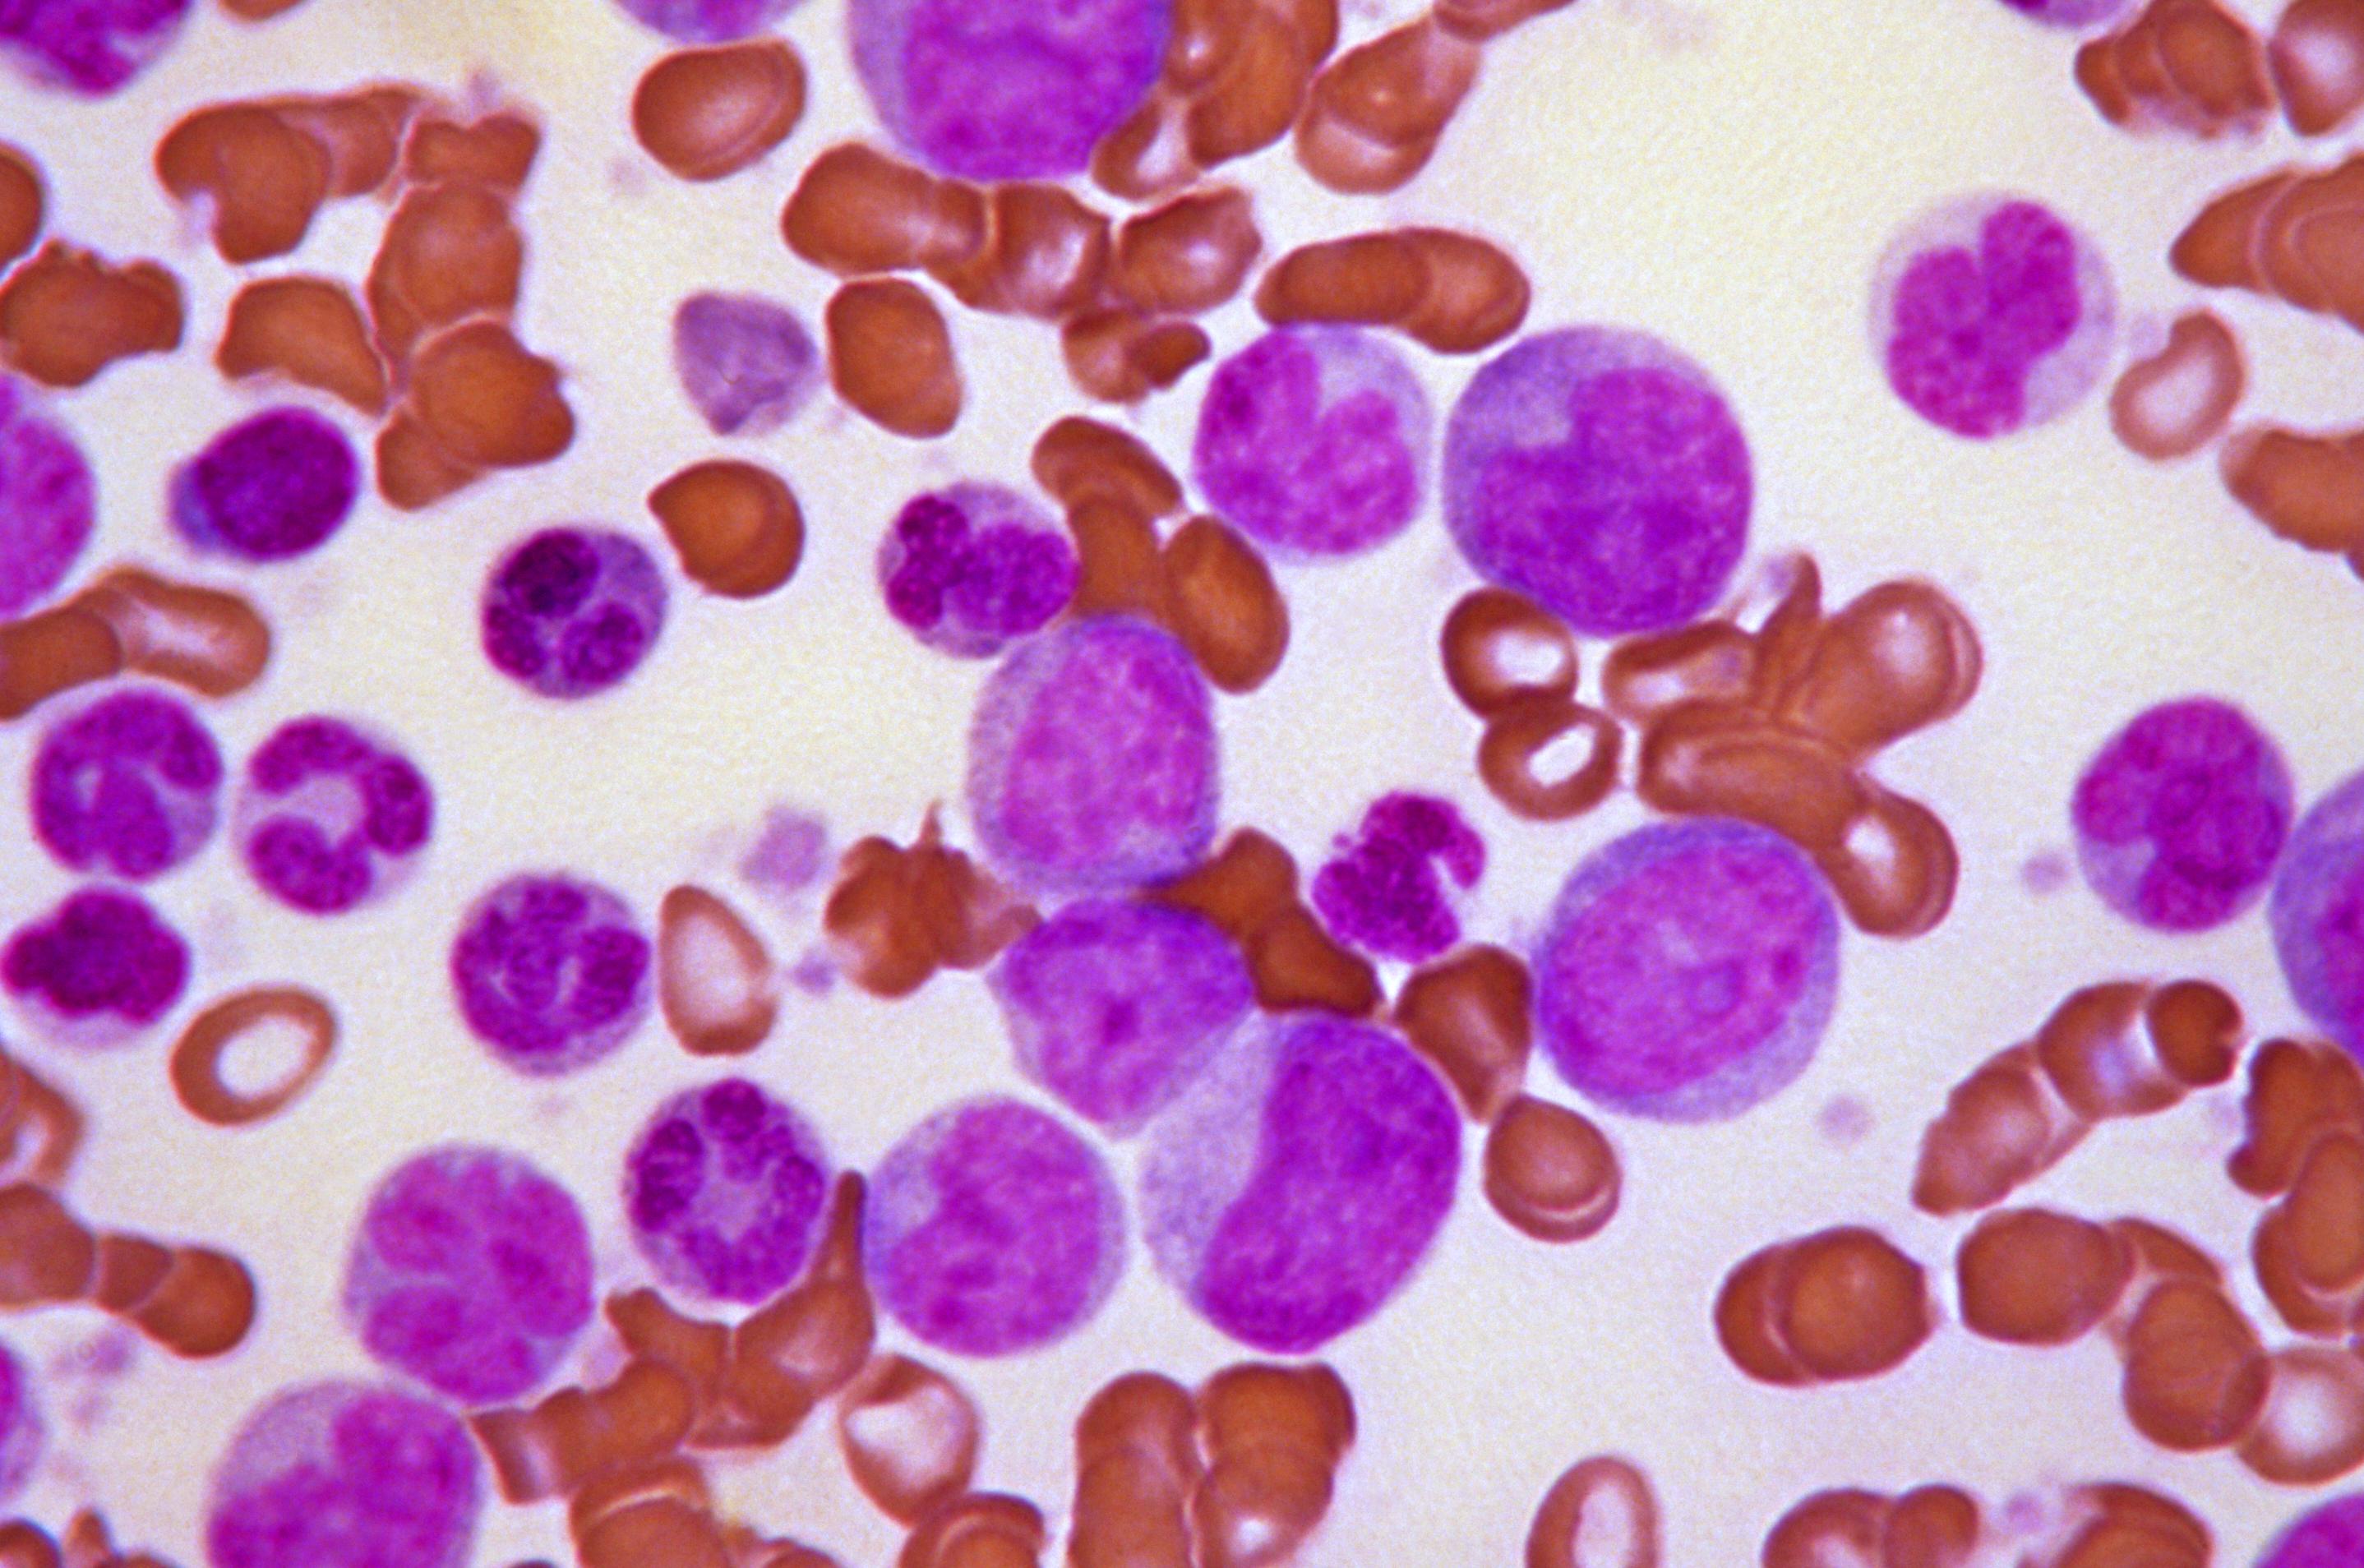 'Blast crisis' in chronic myeloid leukaemia